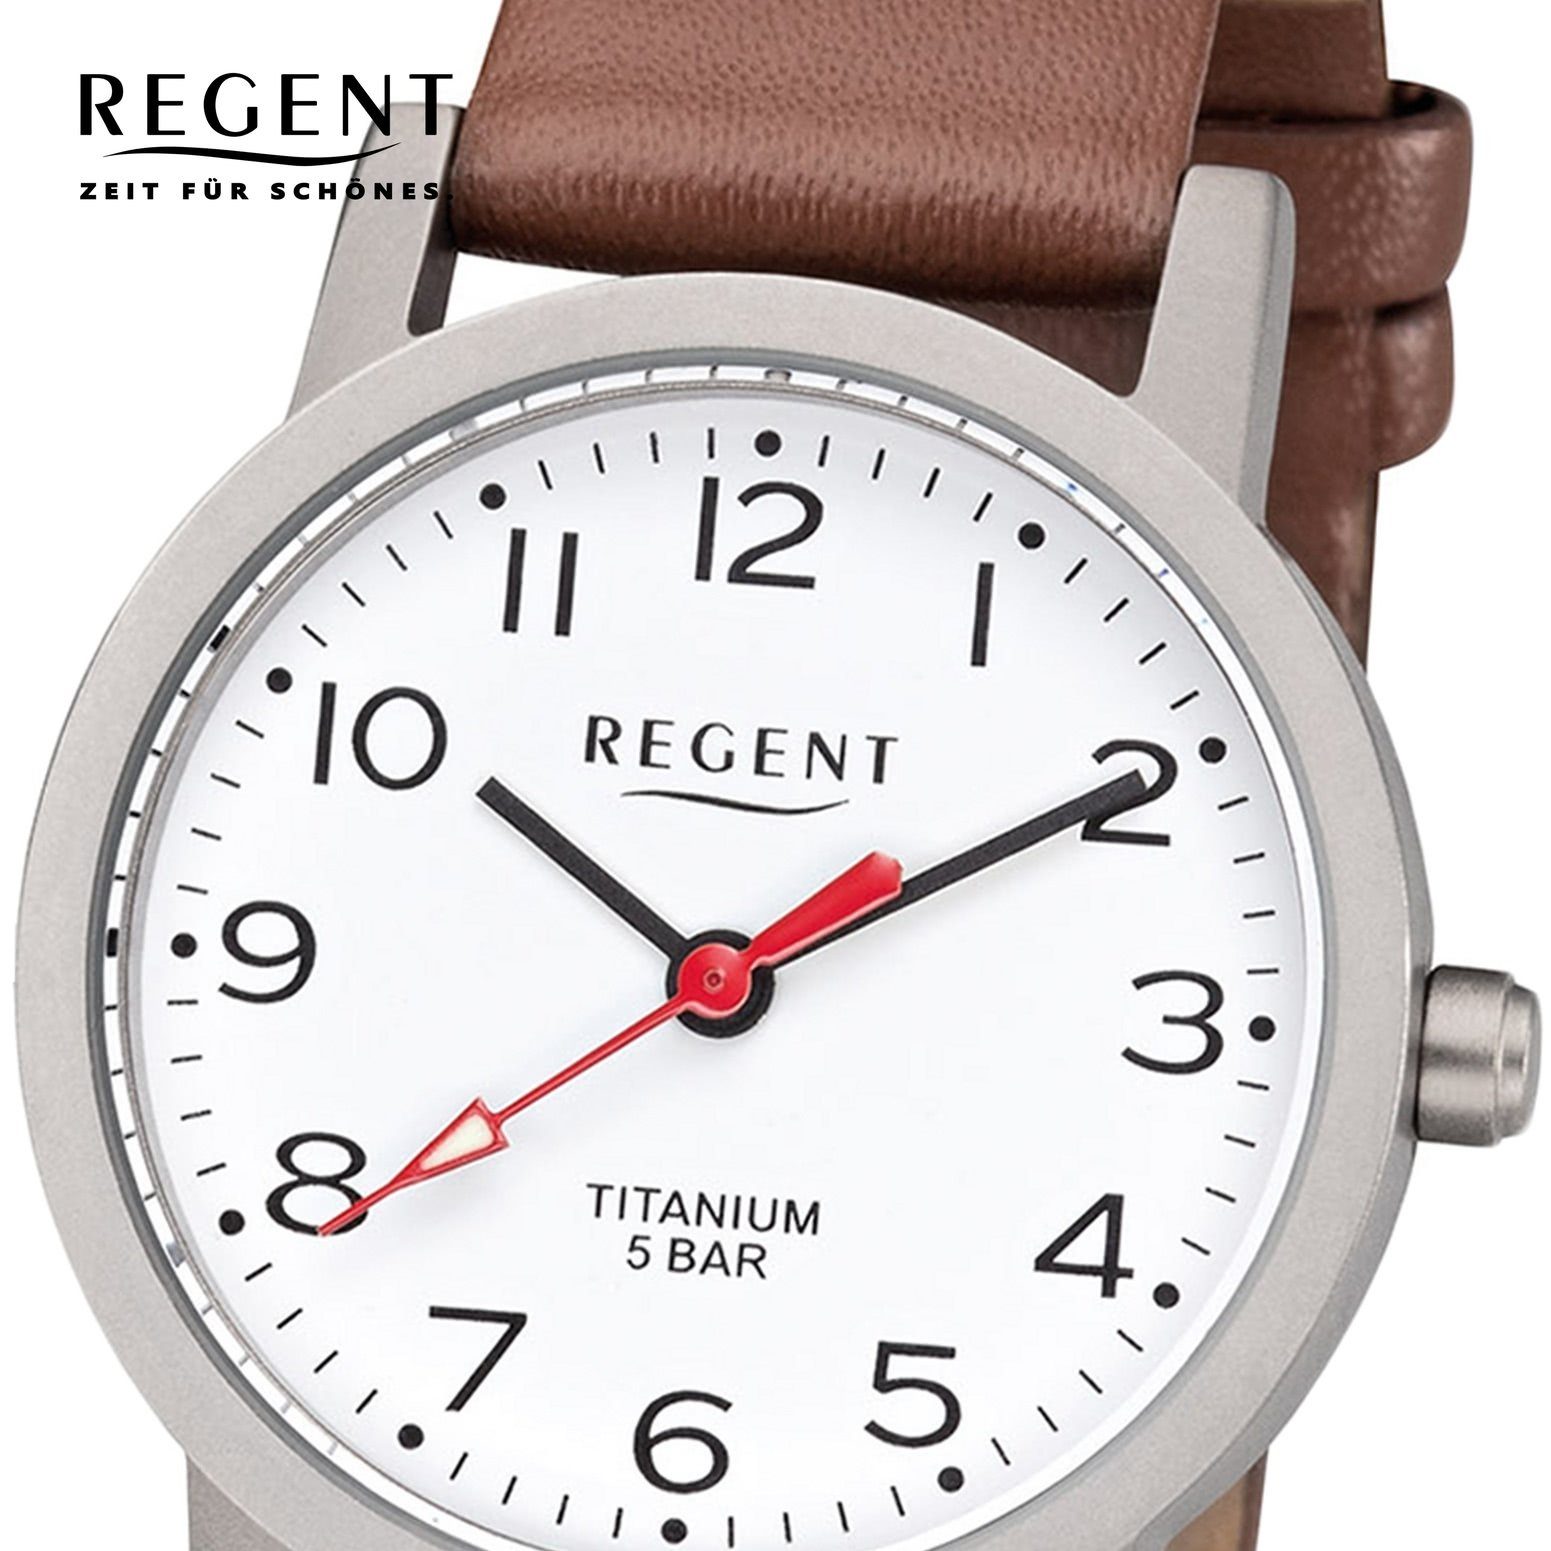 Damen Regent 27mm), Quarzwerk, (ca. F-1213 Lederarmband Leder Regent Armbanduhr rund, klein Damen Uhr Quarzuhr